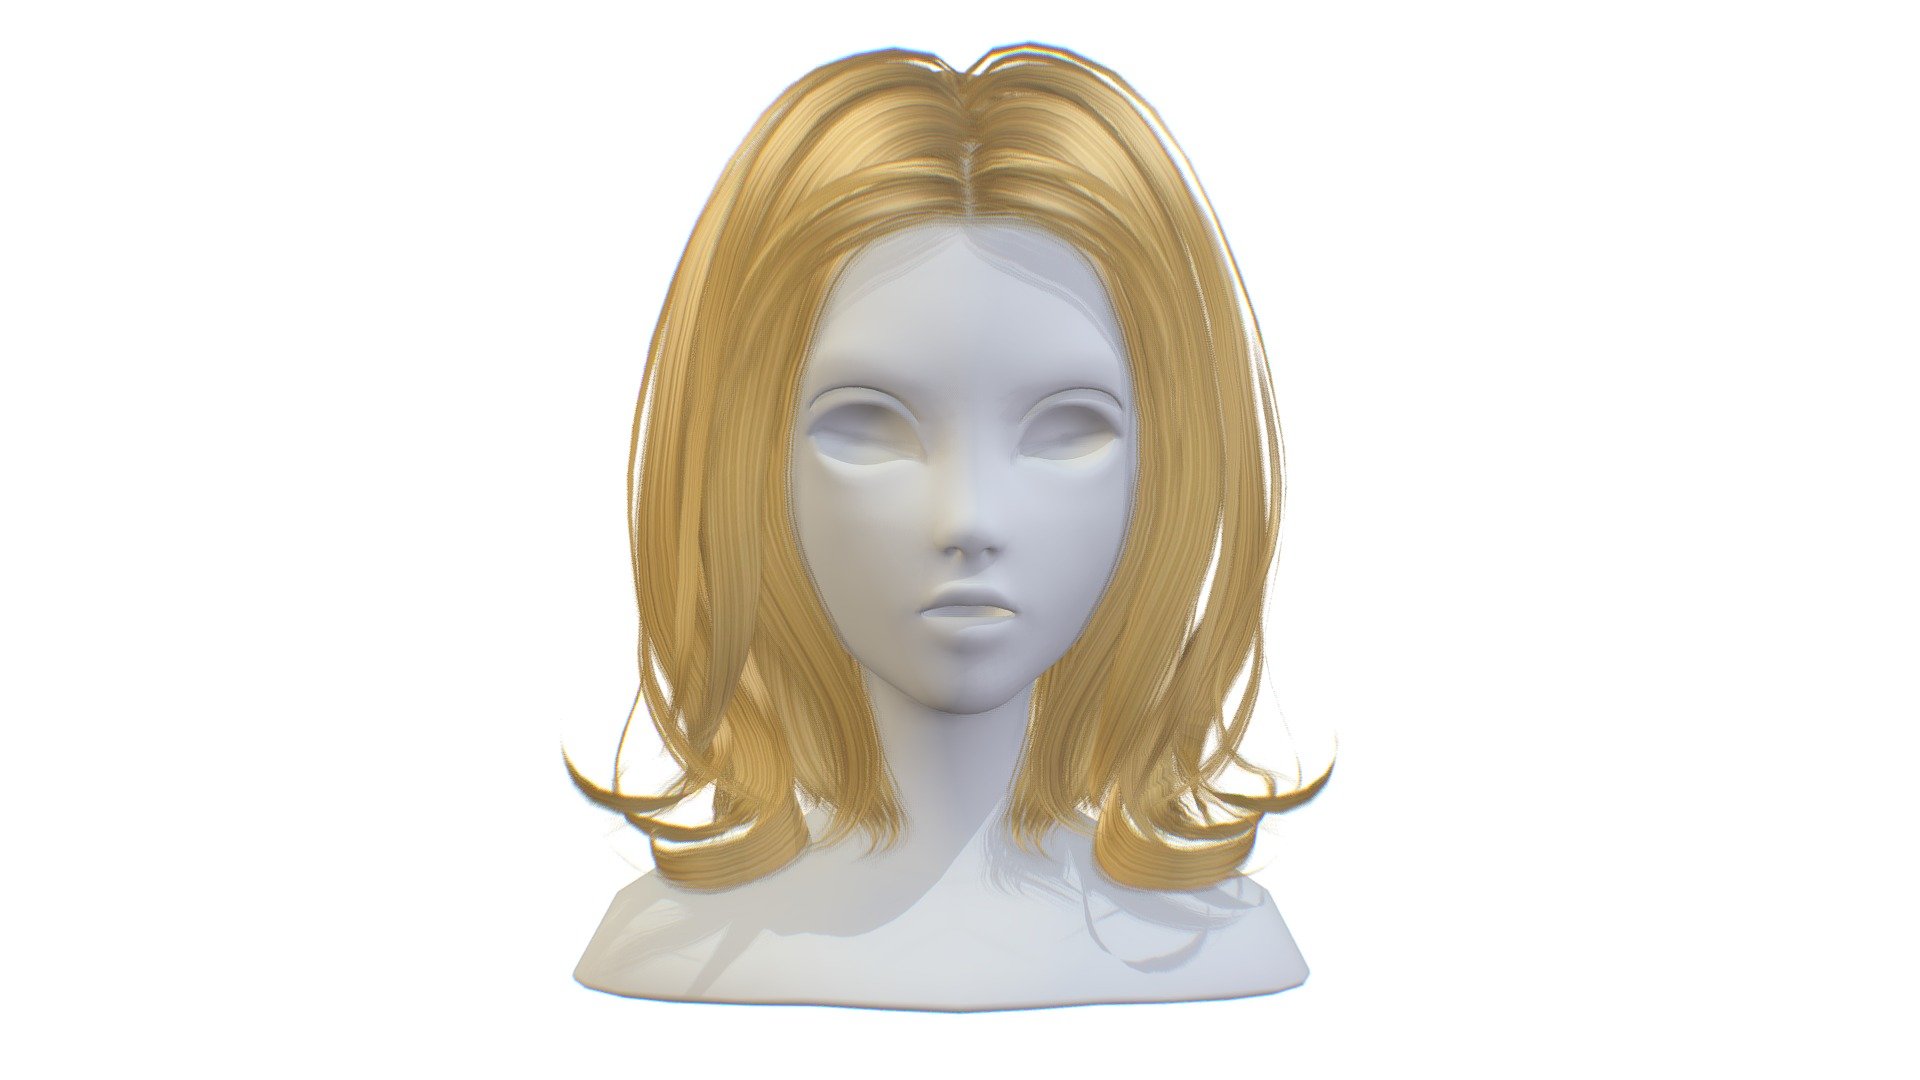 cartoon lush female haircut of medium length - cartoon lush female 4 haircut of medium - Buy Royalty Free 3D model by Oleg Shuldiakov (@olegshuldiakov) 3d model